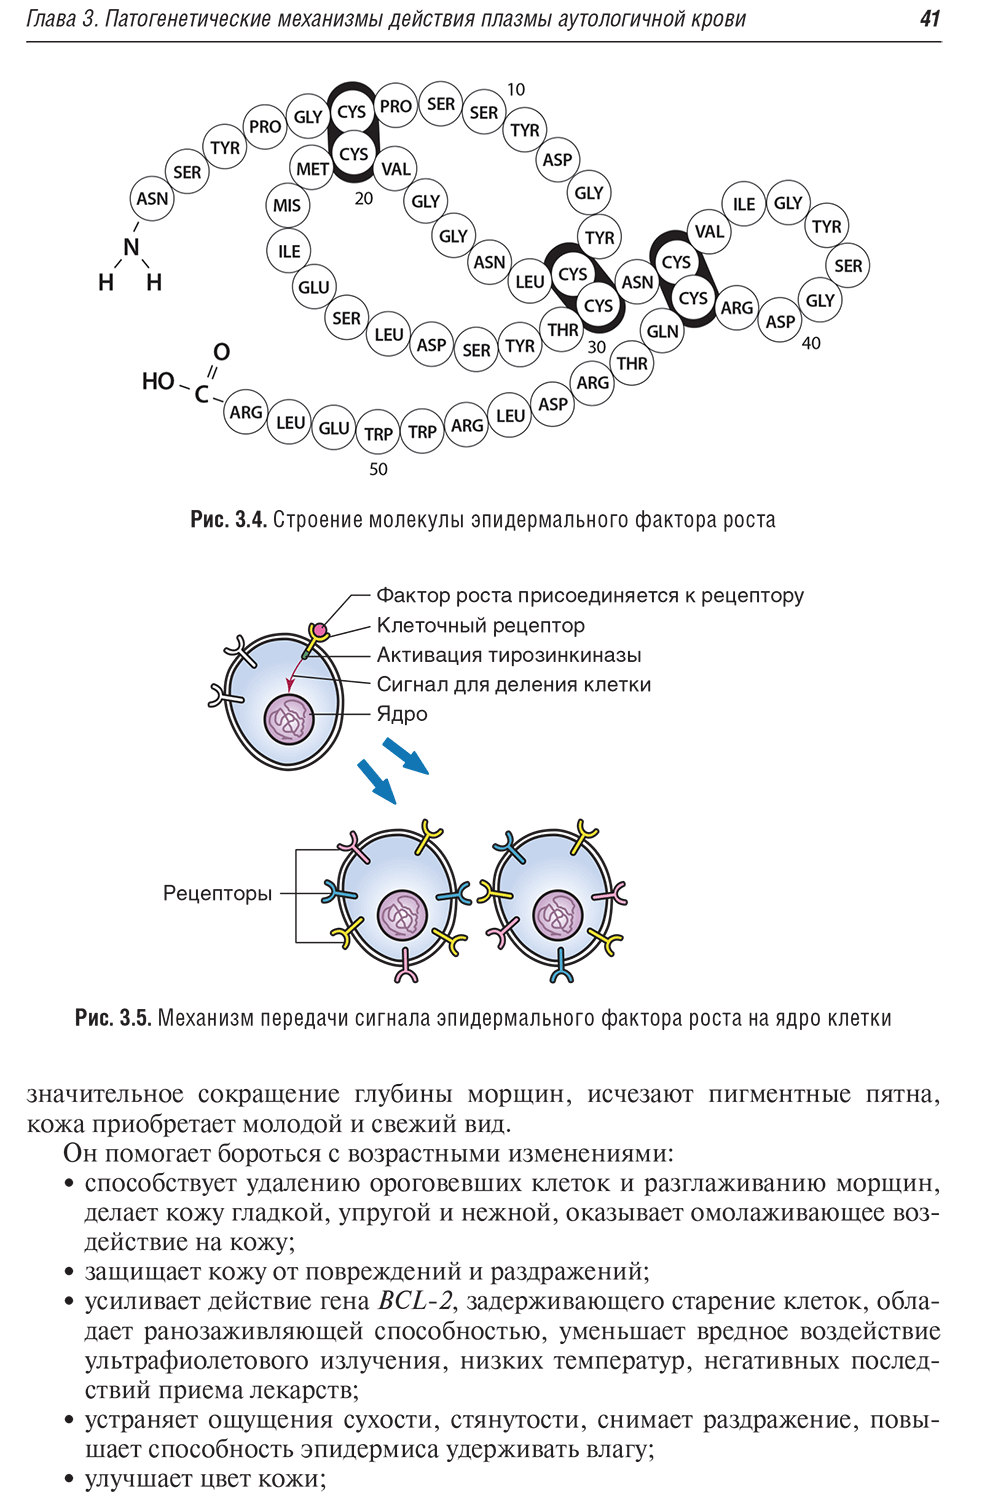 Рис. 3.5. Механизм передачи сигнала эпидермального фактора роста на ядро клетки